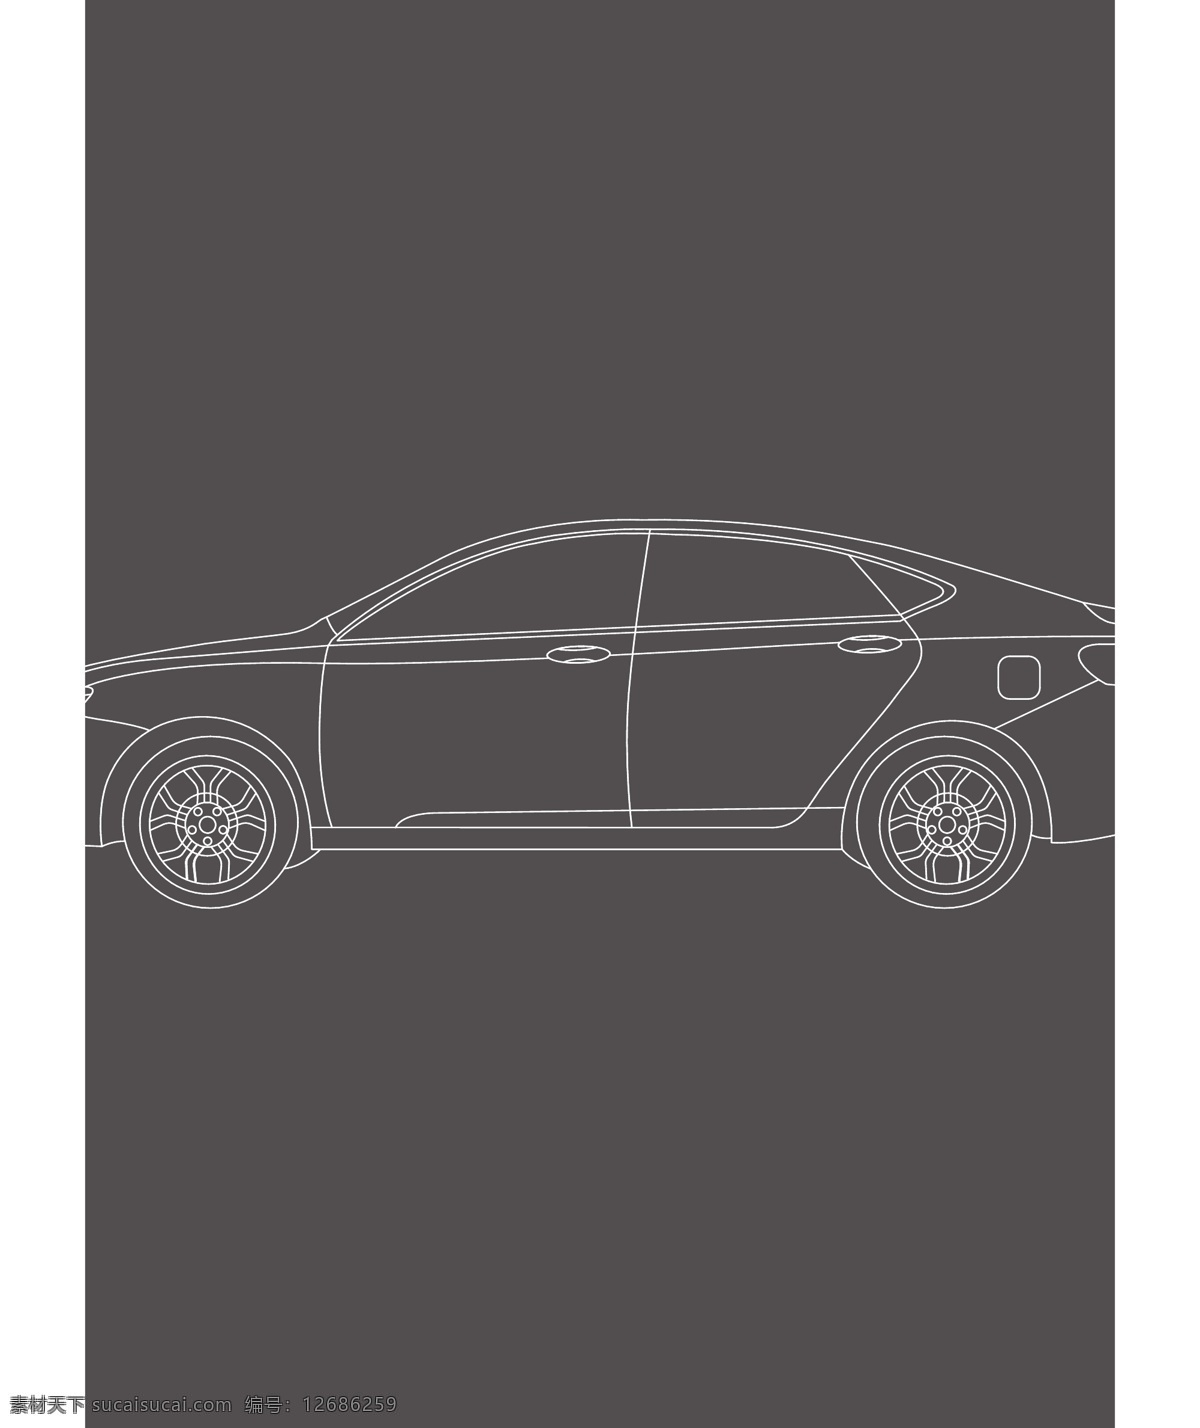 汽车 半侧 线条 矢量图 吉利汽车 轿车 跑车 车 车身 汽车设计 汽车工业设计 侧面 车身侧面 汽车侧面 绘画素材